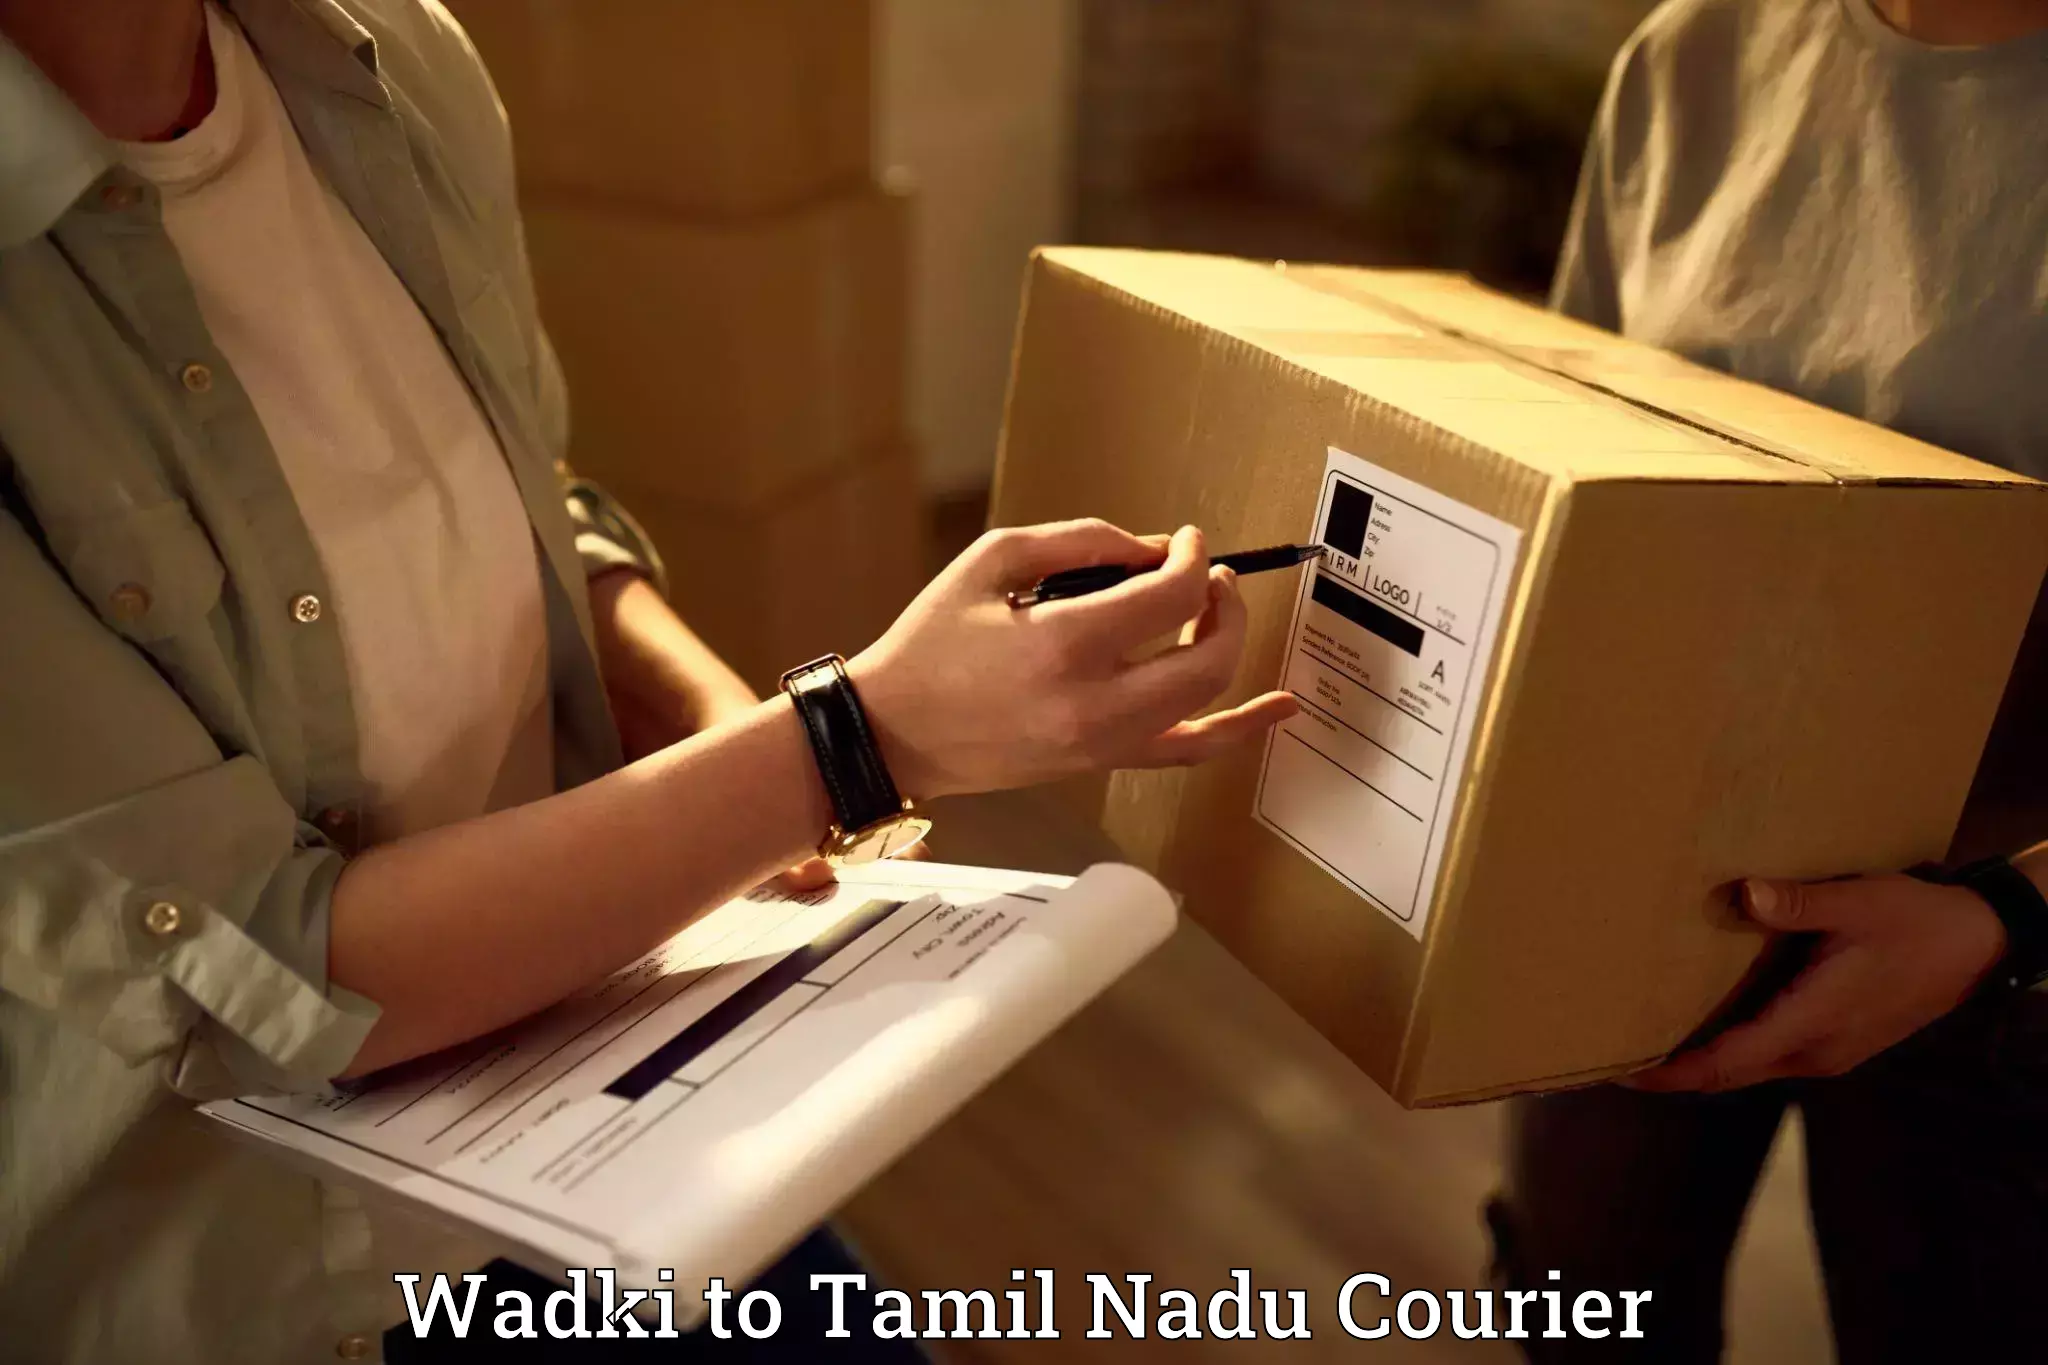 Skilled movers Wadki to Tamil Nadu